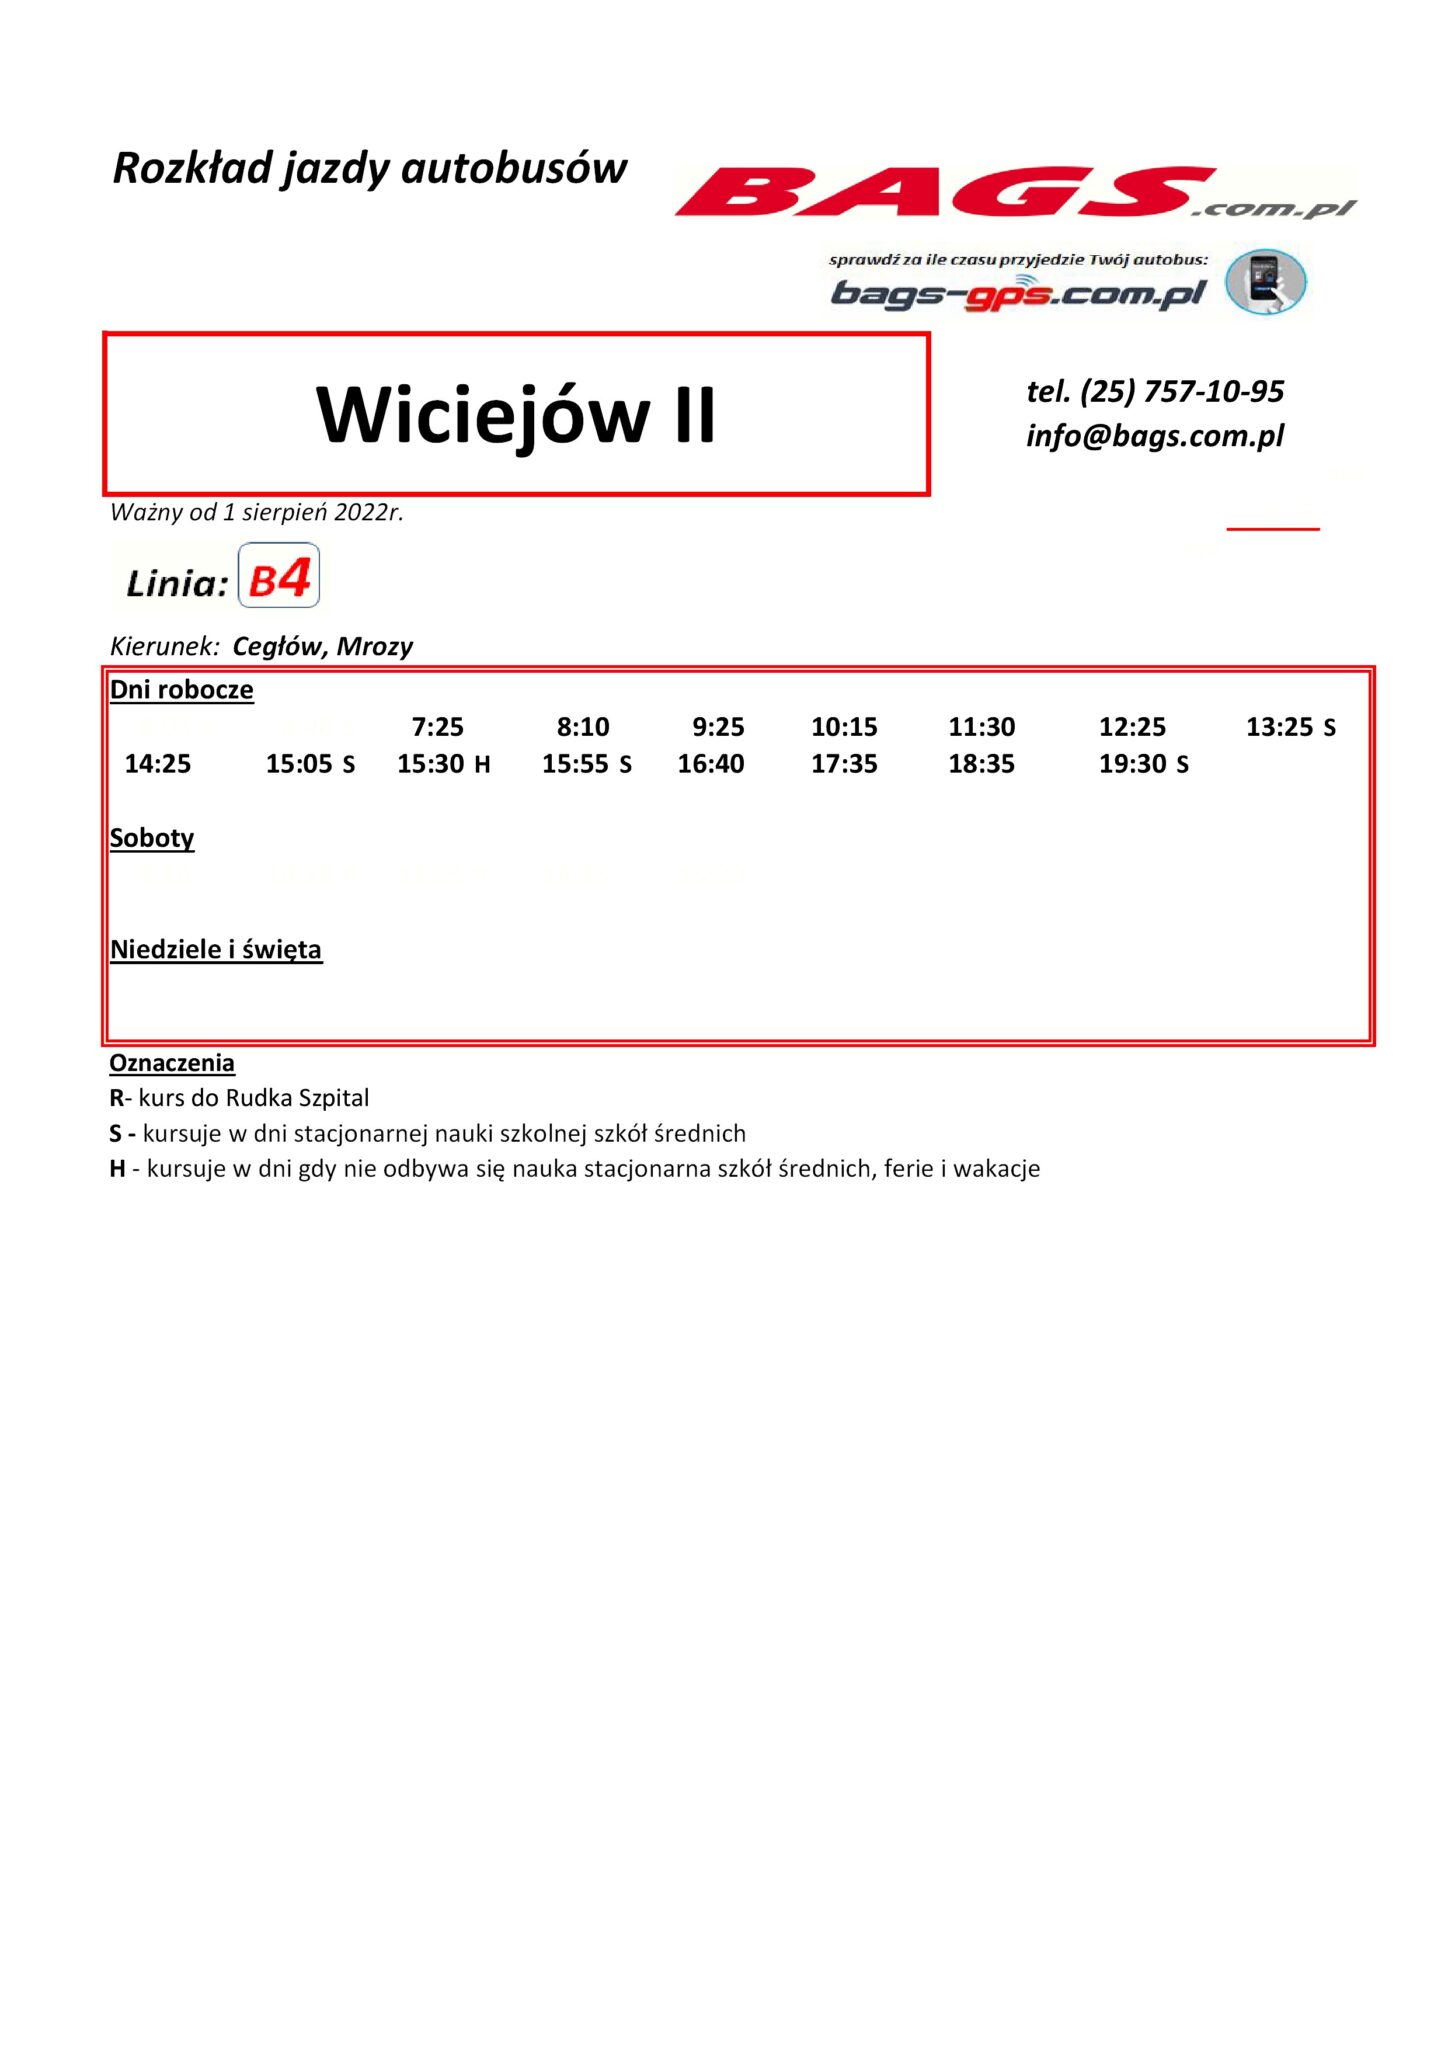 Wiciejow-II-1-1-1448x2048